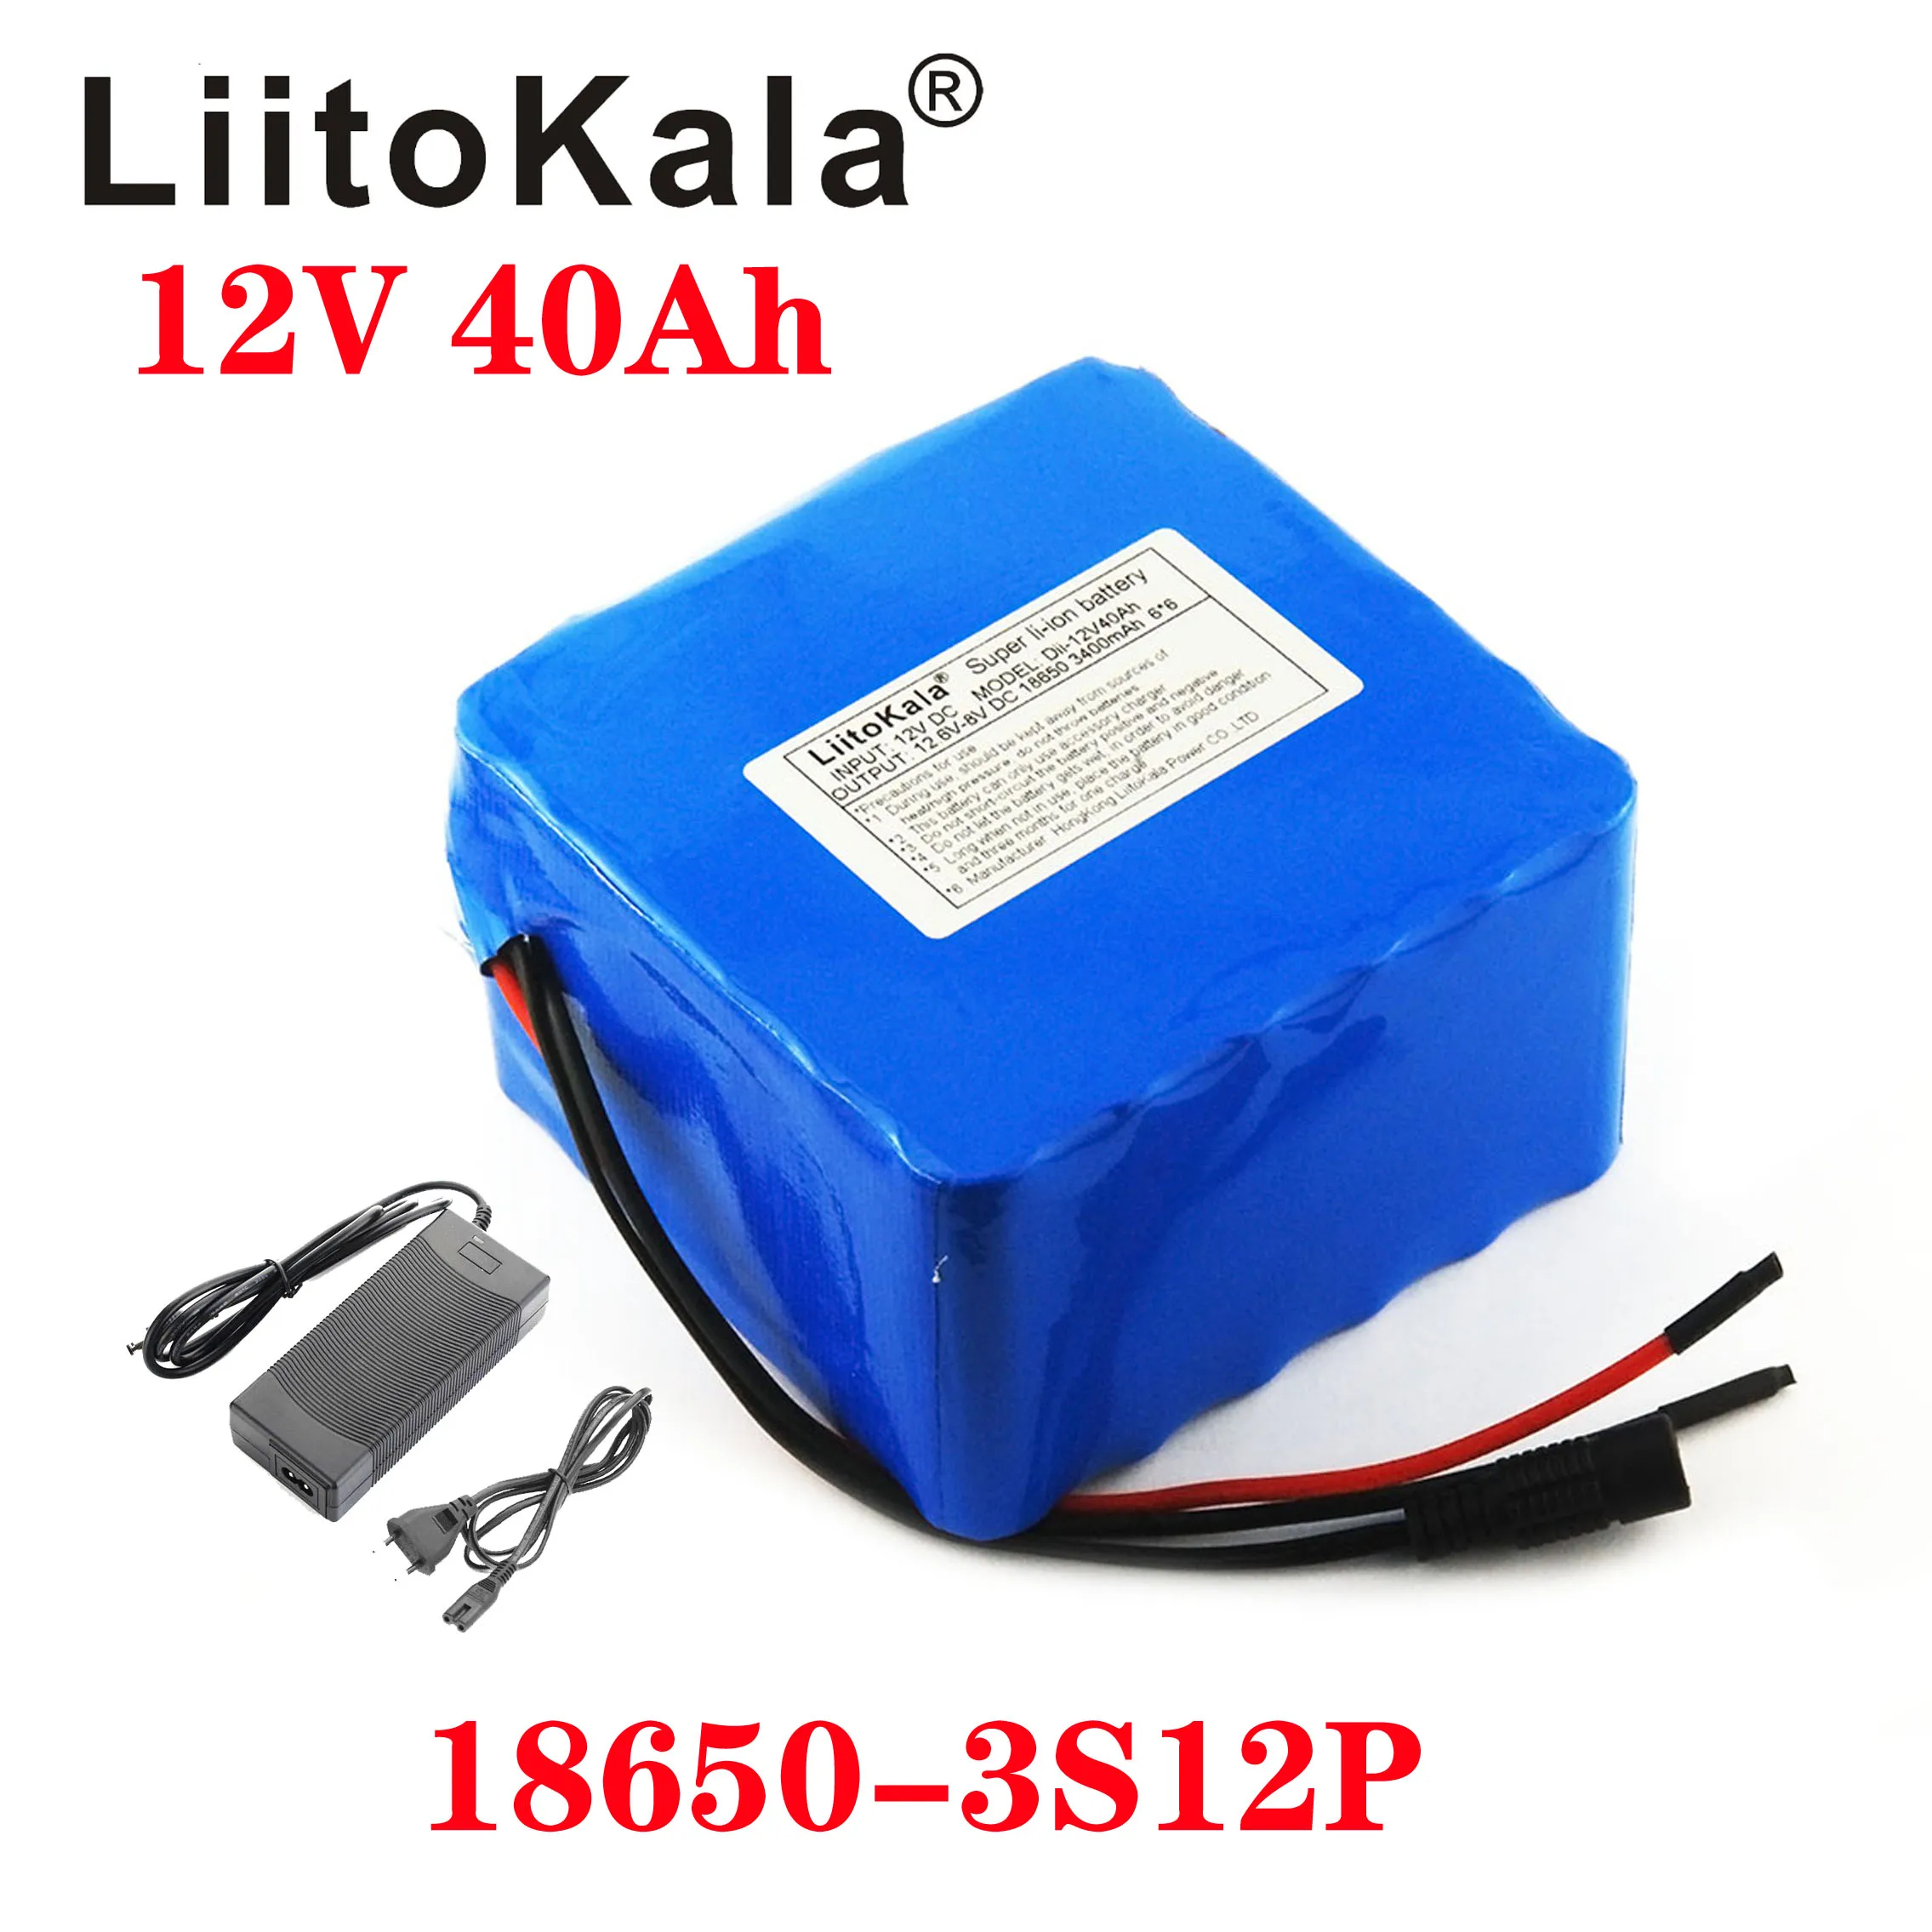 support Udfordring Betydning LiitoKala 12V 40Ah 3S12P 11.1 V 12,6 V Lithium Batteri Pack til Inverter  Xenon-Lampe Sol Gade Lys Sightseeing Bil Osv. - Salg ~ Kinagrillvejle.dk